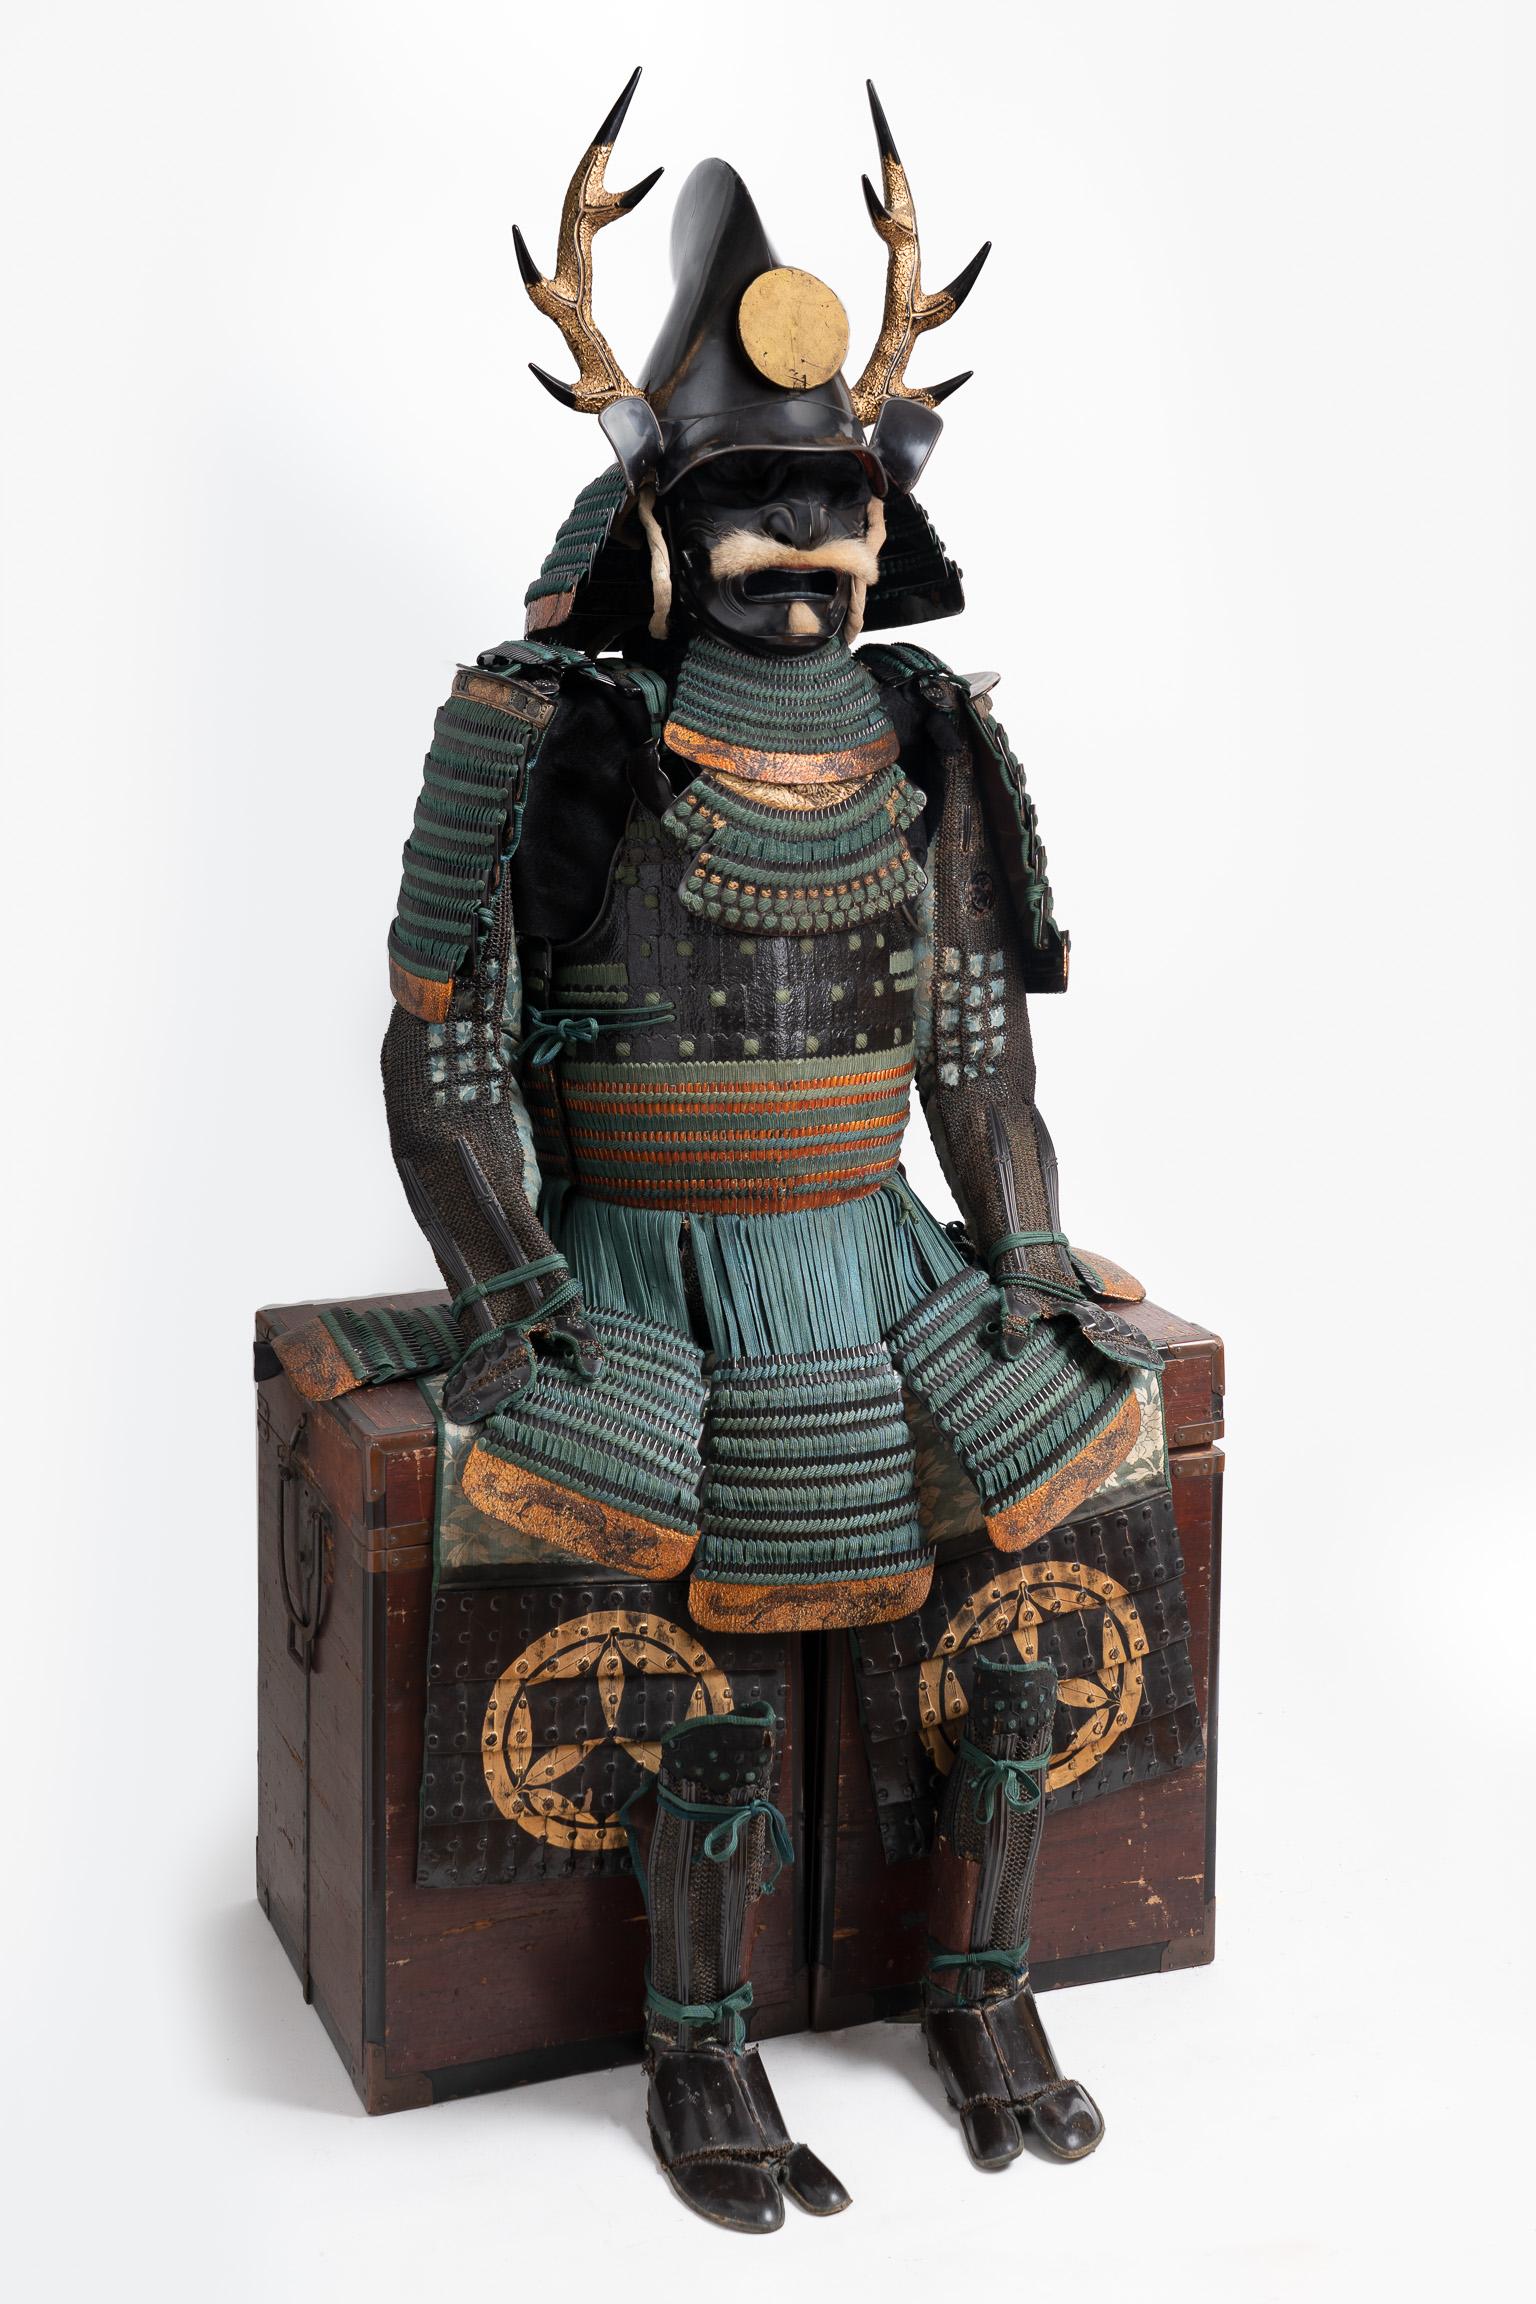 Dangae do tosei gusoku
Blaugeschnürte Samurai-Rüstung mit Kürass im Doppelstil

Edo-Periode, 18. Jahrhundert

 

Kabuto [Helm]: Schwarz lackierter eboshi-nari kabuto, in der Form dieser Hofmütze. Der Helm ist ausgestattet mit  schöne originale